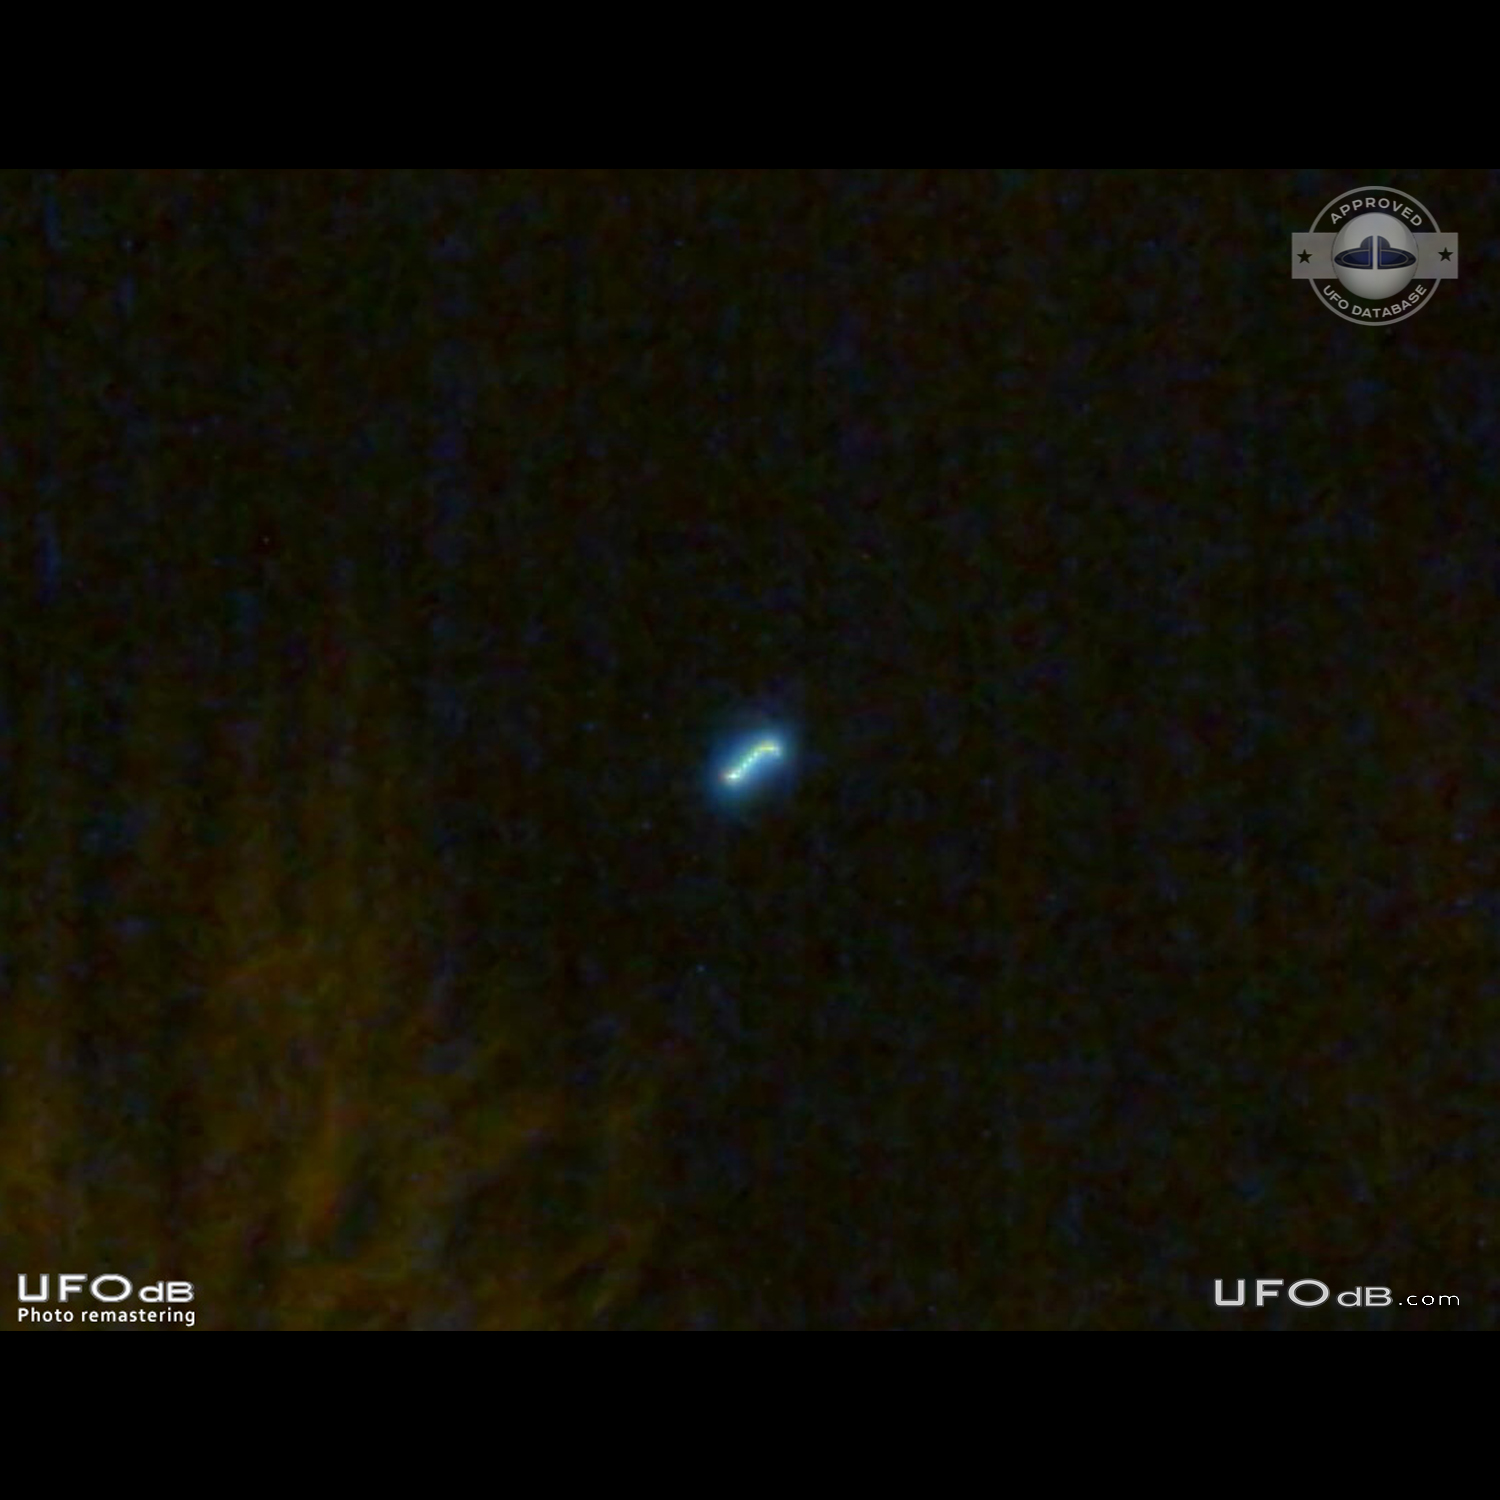 Perfect circle UFO with blue light in Satu Mare Romania in 2010 UFO Picture #841-1